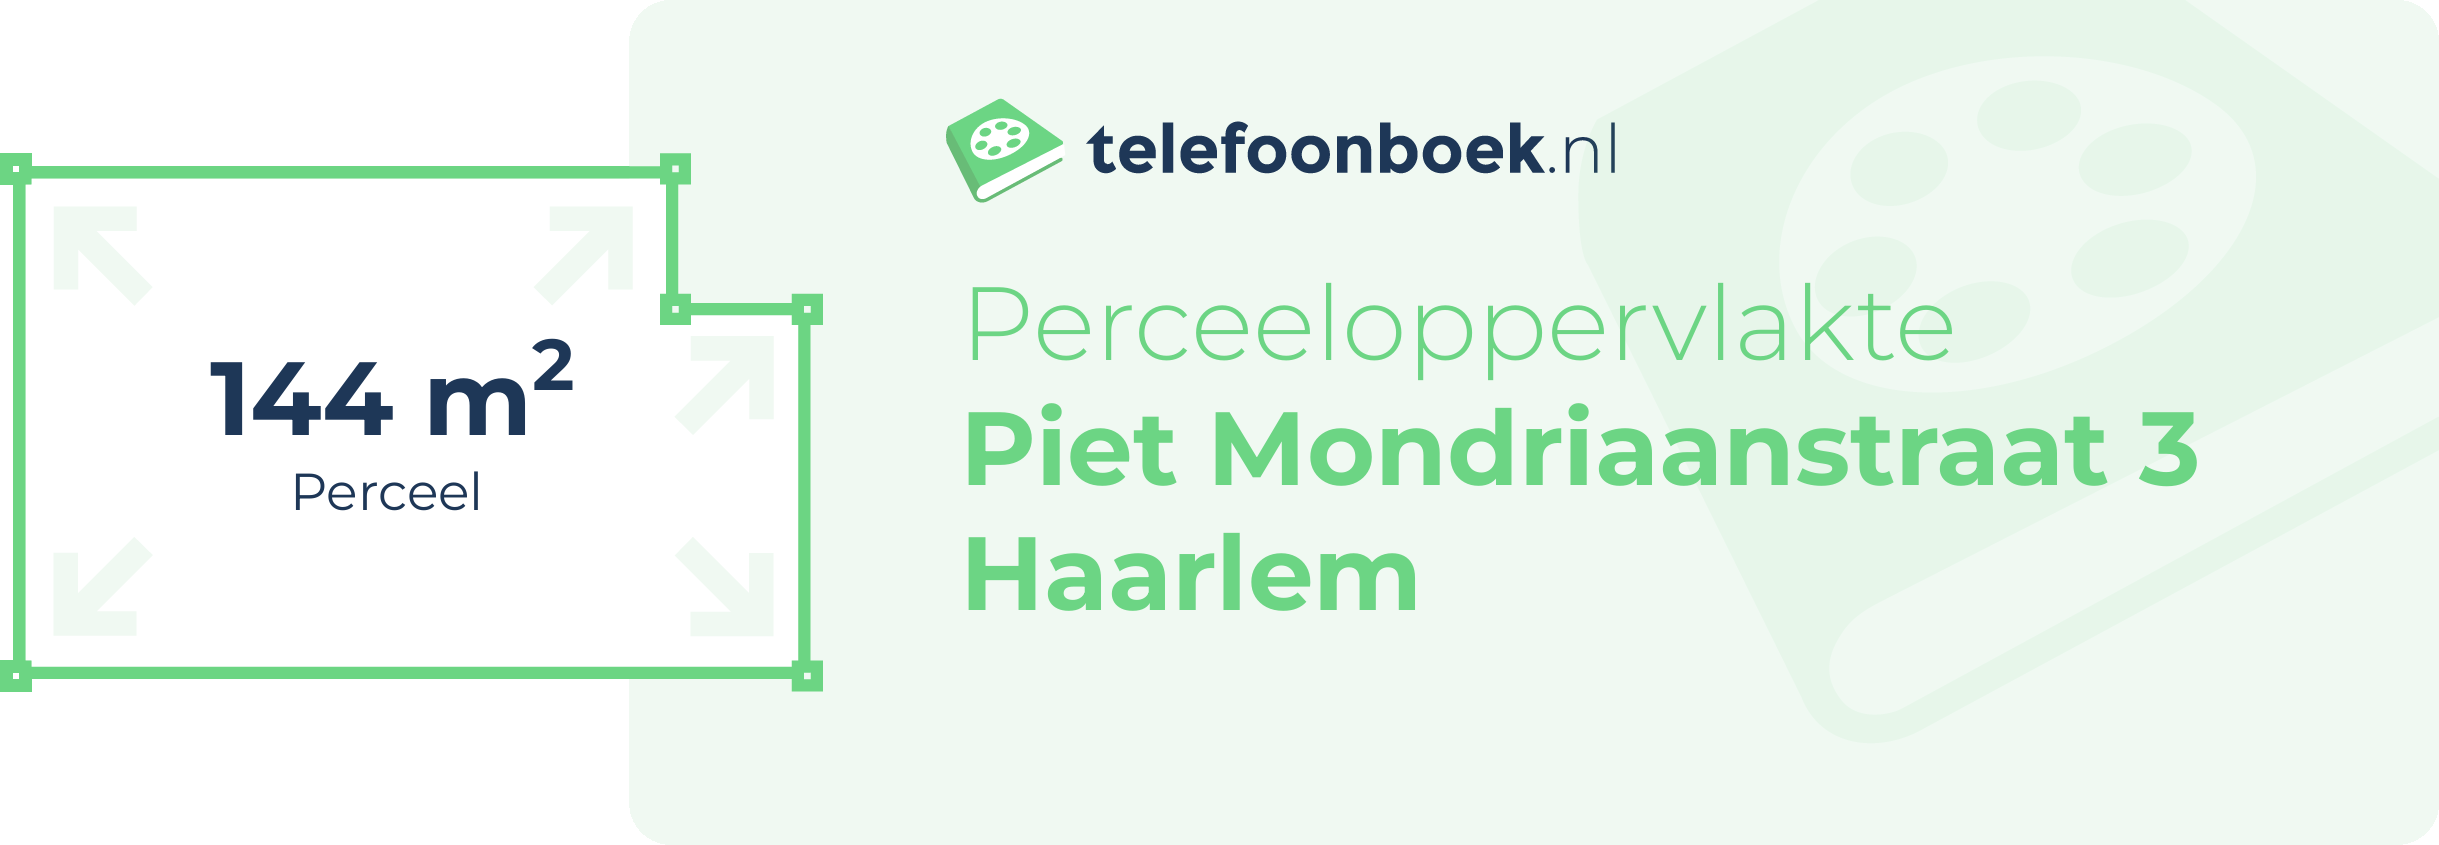 Perceeloppervlakte Piet Mondriaanstraat 3 Haarlem